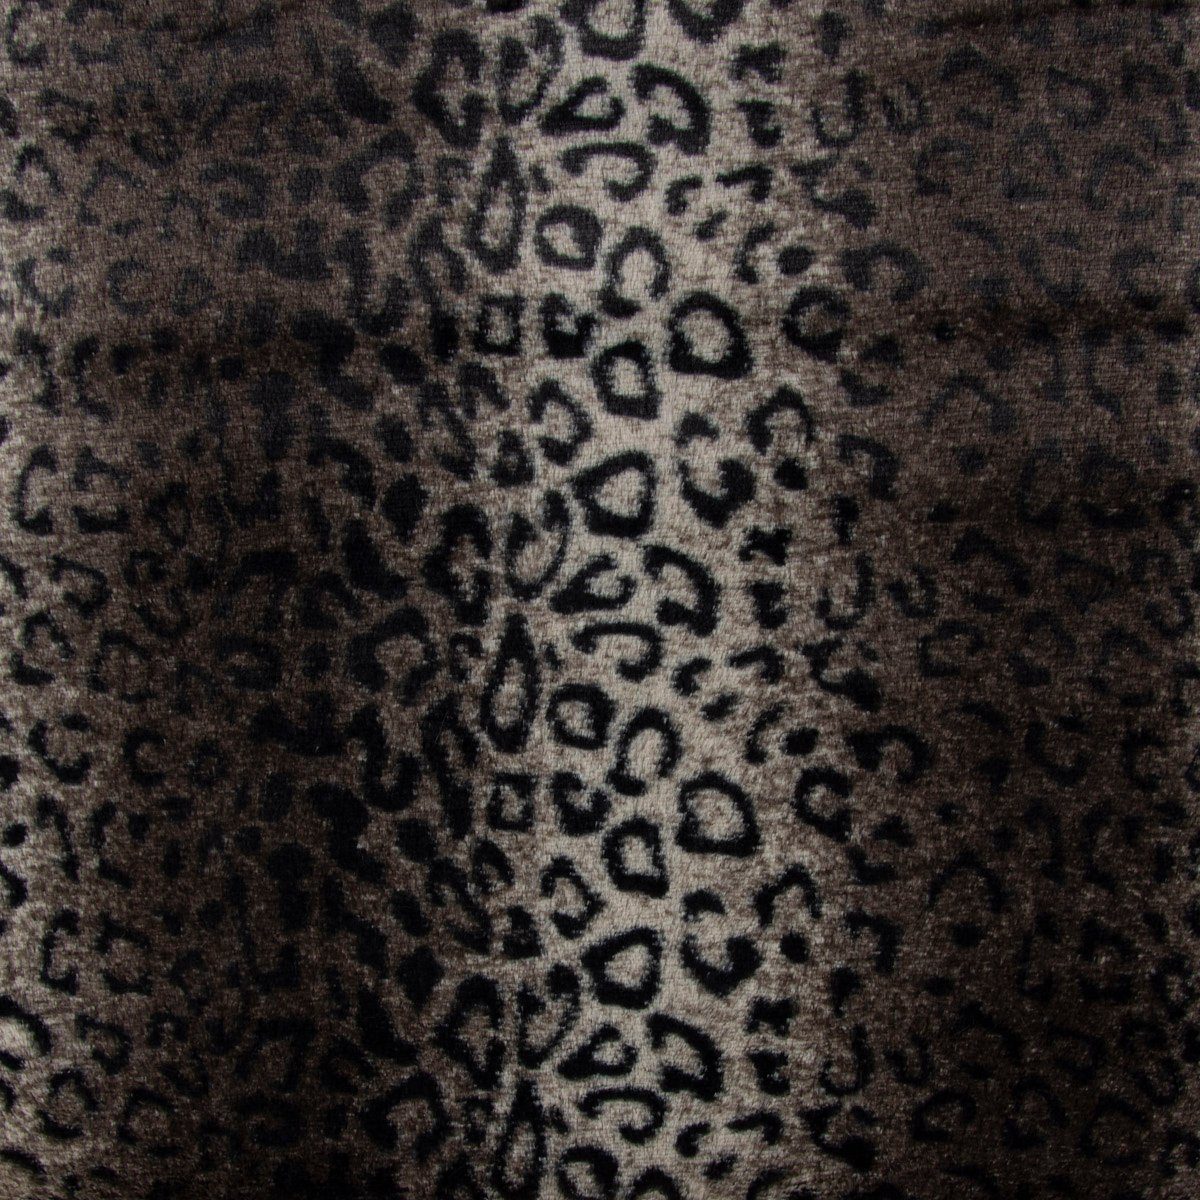 SCHÖNER LEBEN. Stoff »Kunstfell Fellimitat Plüsch Leopard kuschelweich grau  braun schwarz 1,5m Breite« online kaufen | OTTO